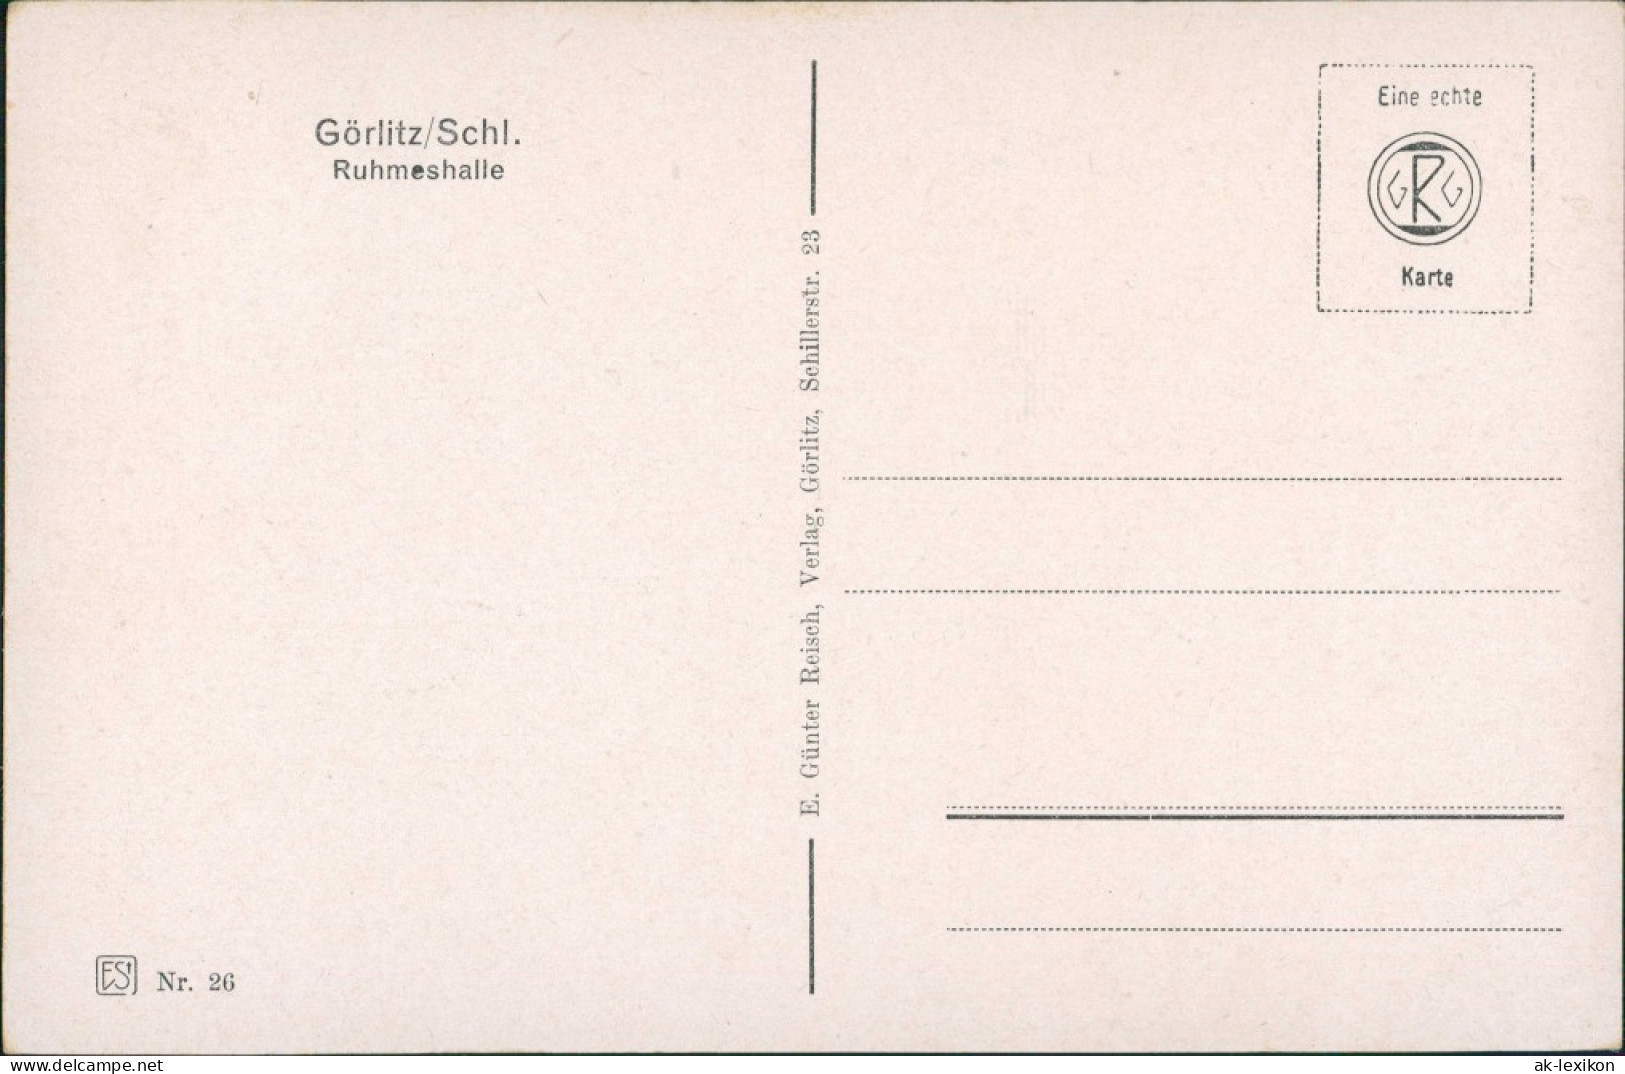 Görlitz Zgorzelec Oberlausitzer Gedenkhalle/Ruhmeshalle/Miejski Dom Kultury 1932 - Schlesien